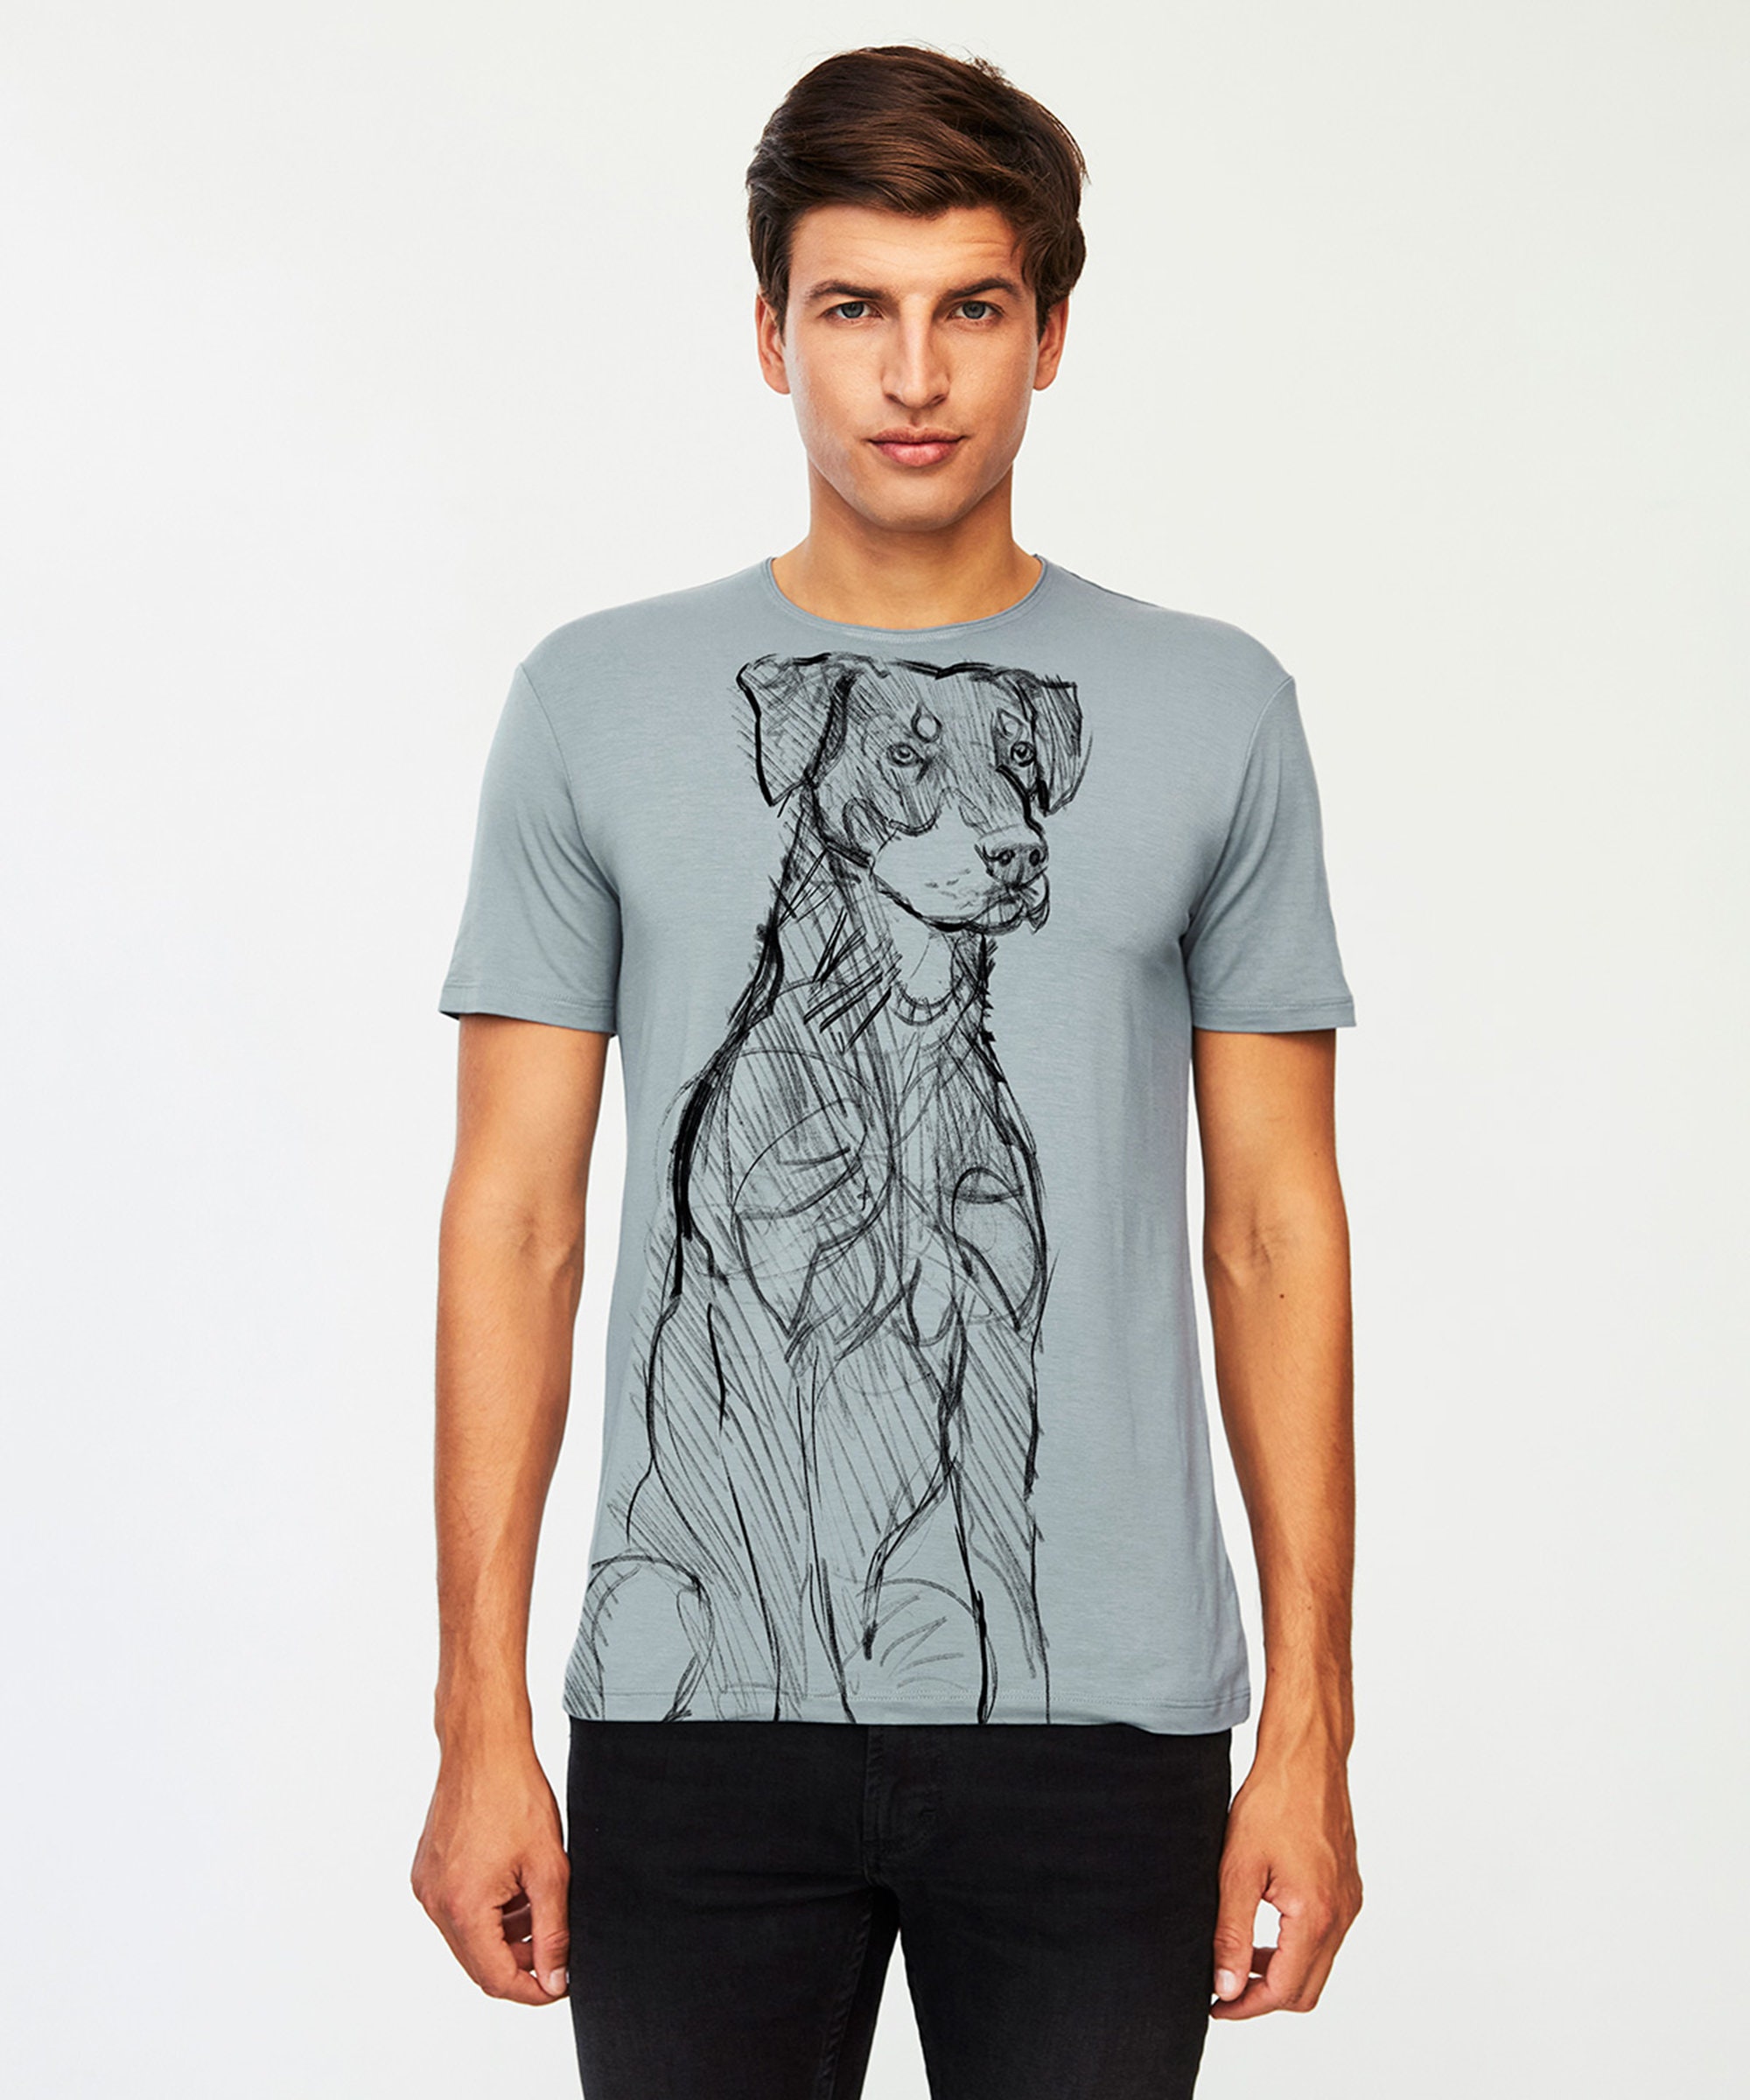 Beauceron Dog T-shirt Man Premium Quality Viscose Shirt for - Etsy UK